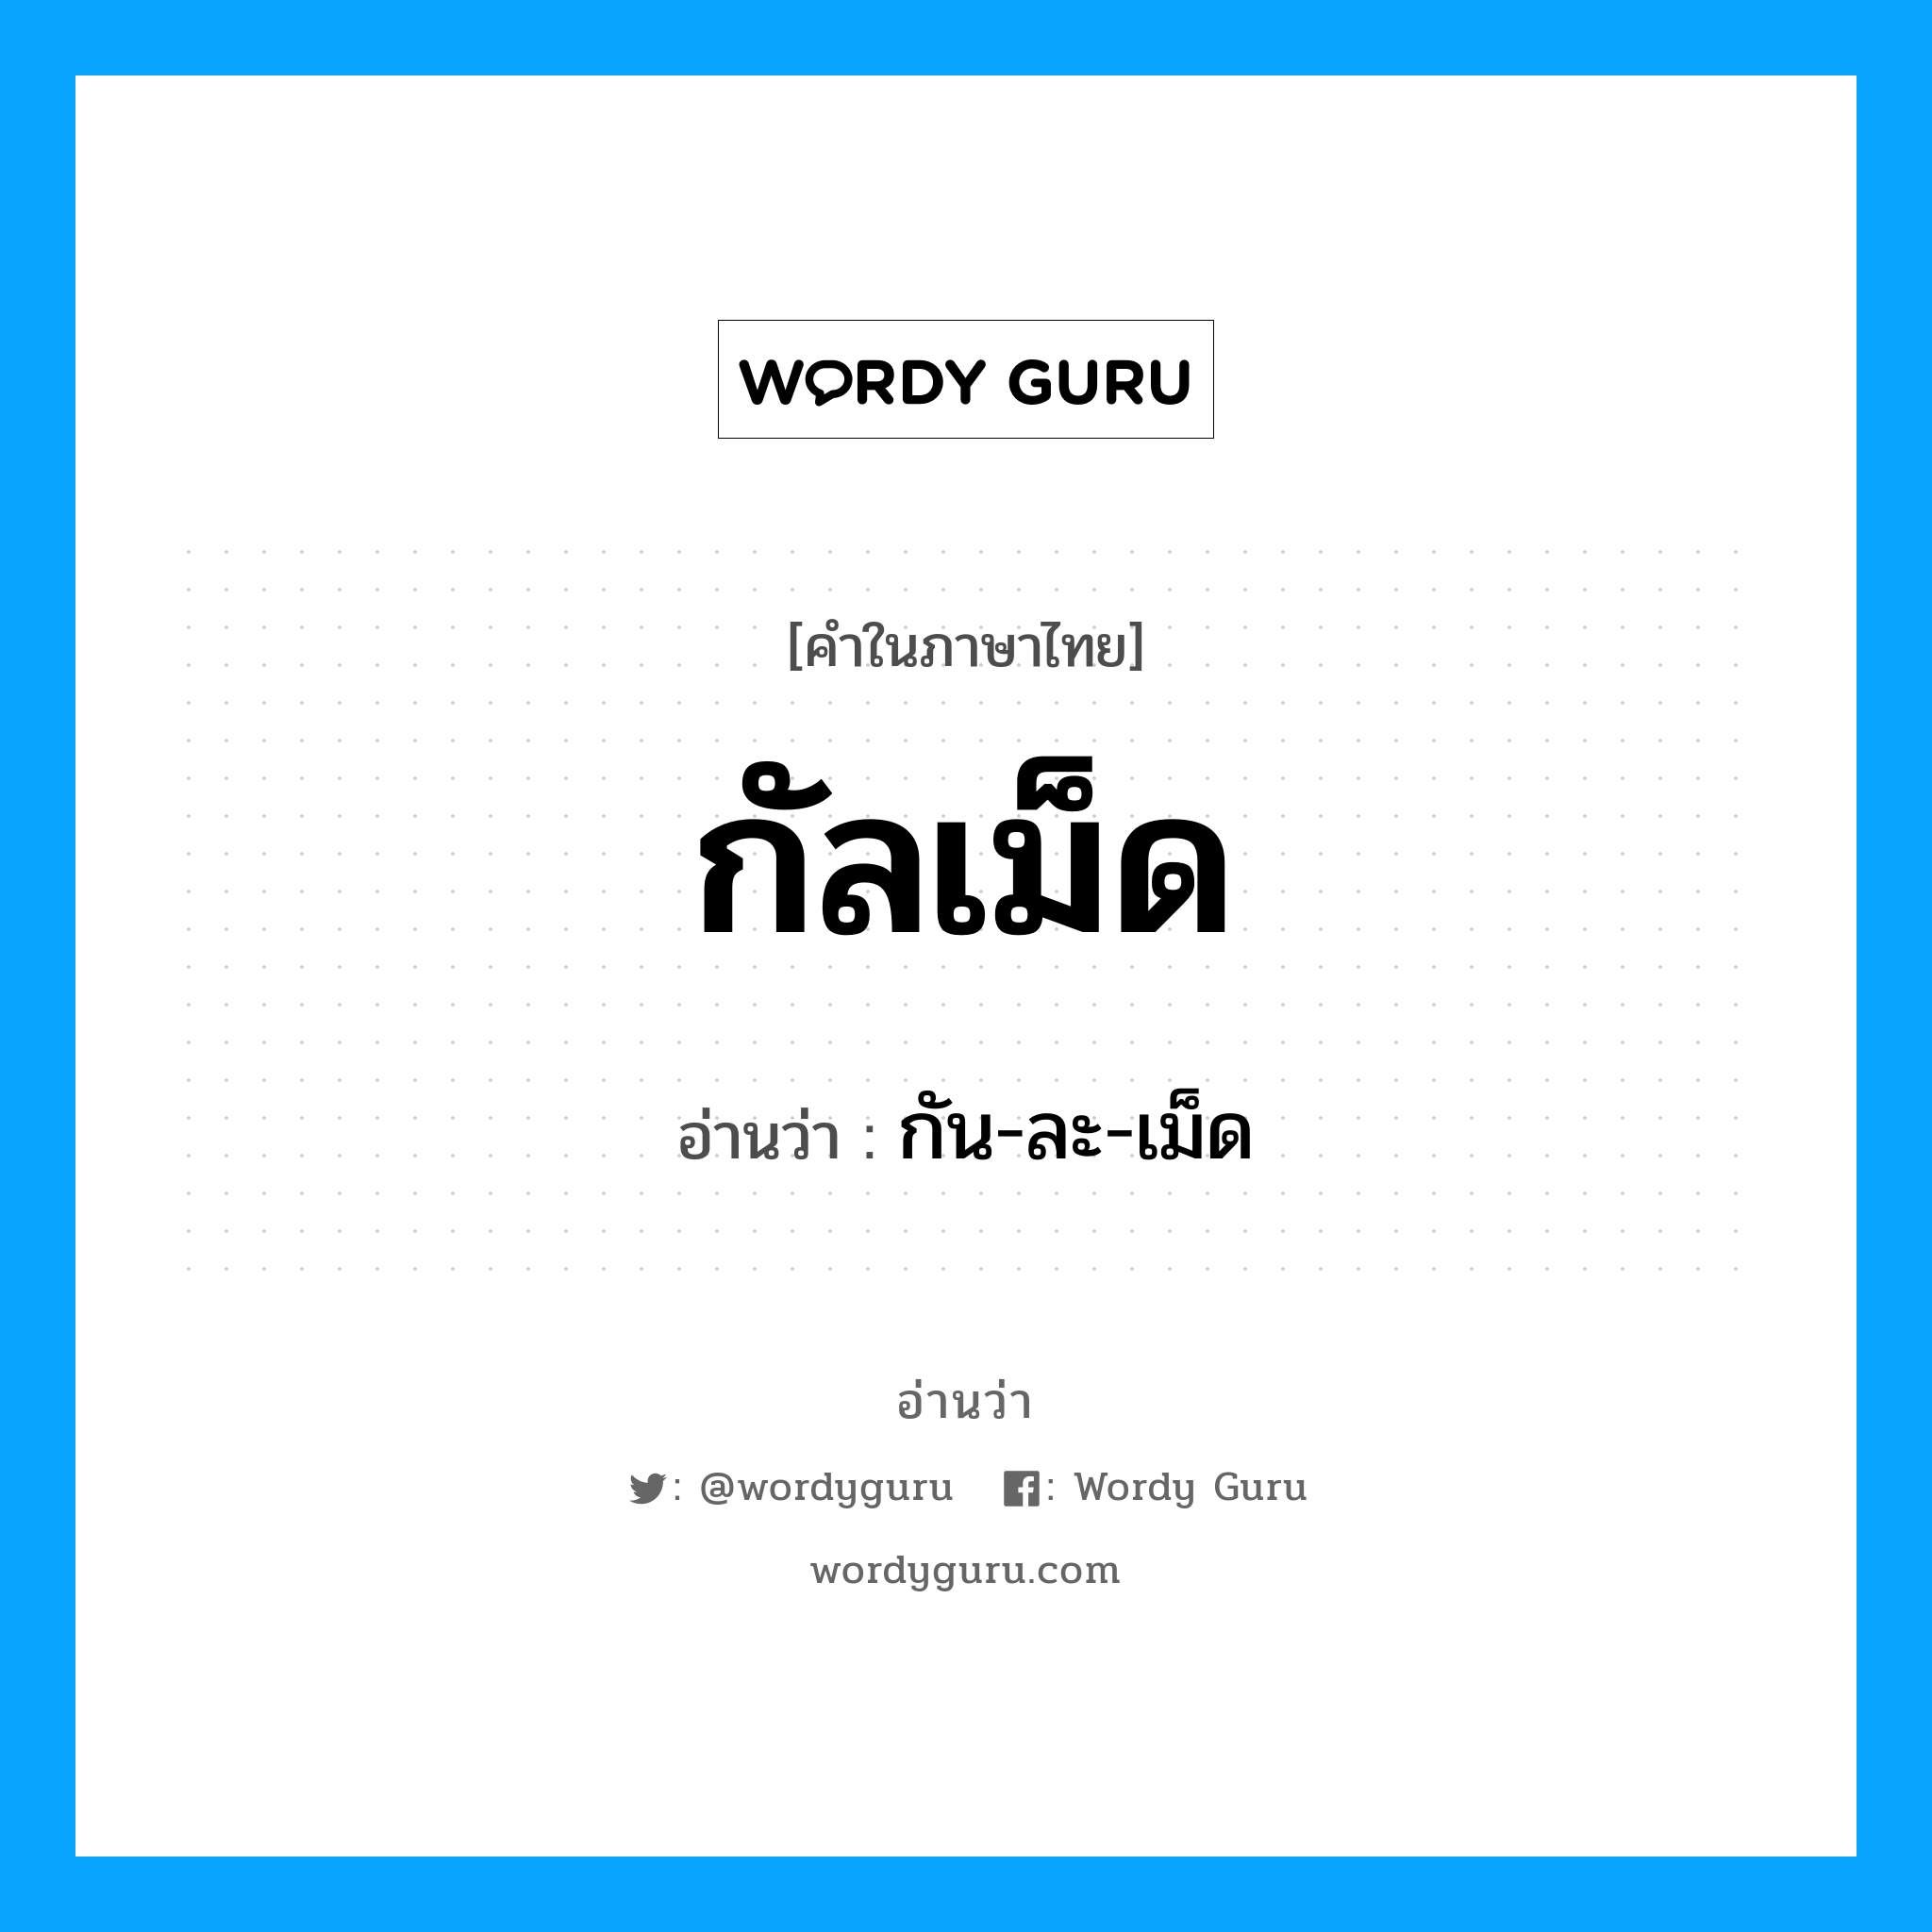 กัน-ละ-เม็ด เป็นคำอ่านของคำไหน?, คำในภาษาไทย กัน-ละ-เม็ด อ่านว่า กัลเม็ด